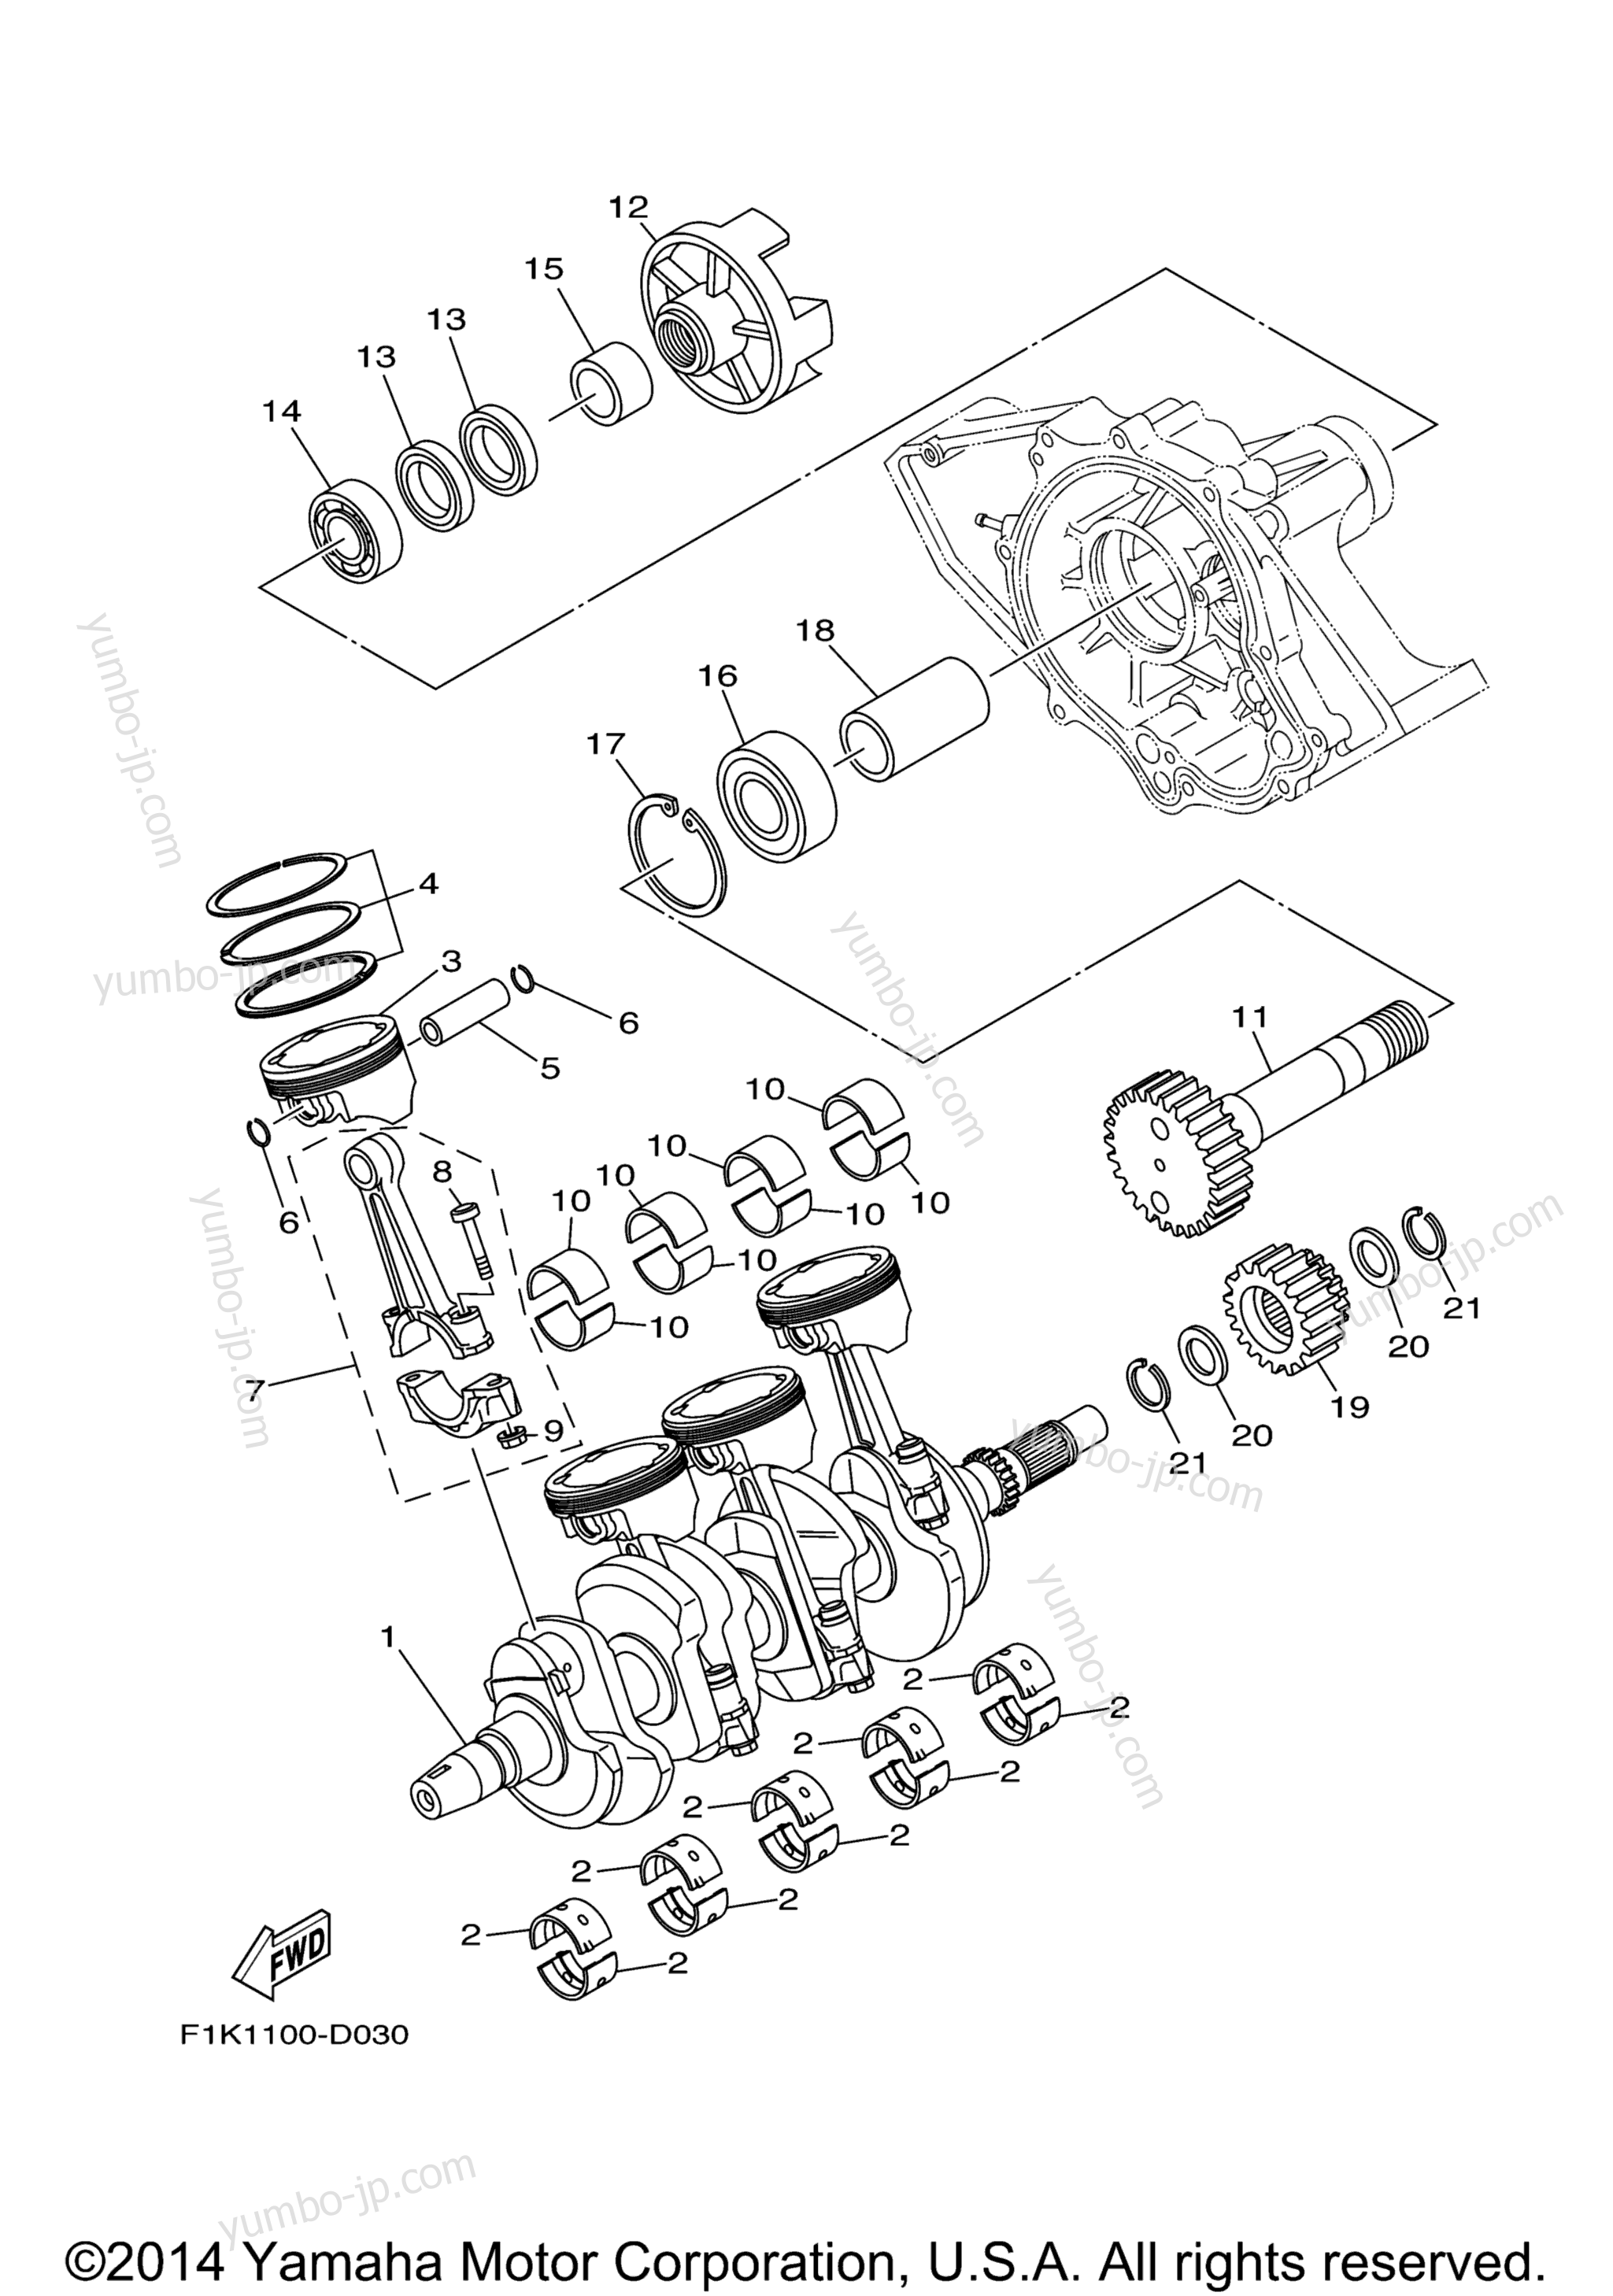 Crankshaft & Piston для гидроциклов YAMAHA VX CRUISER_VX1100BN VX DELUXE (VX1100BN) 2014 г.